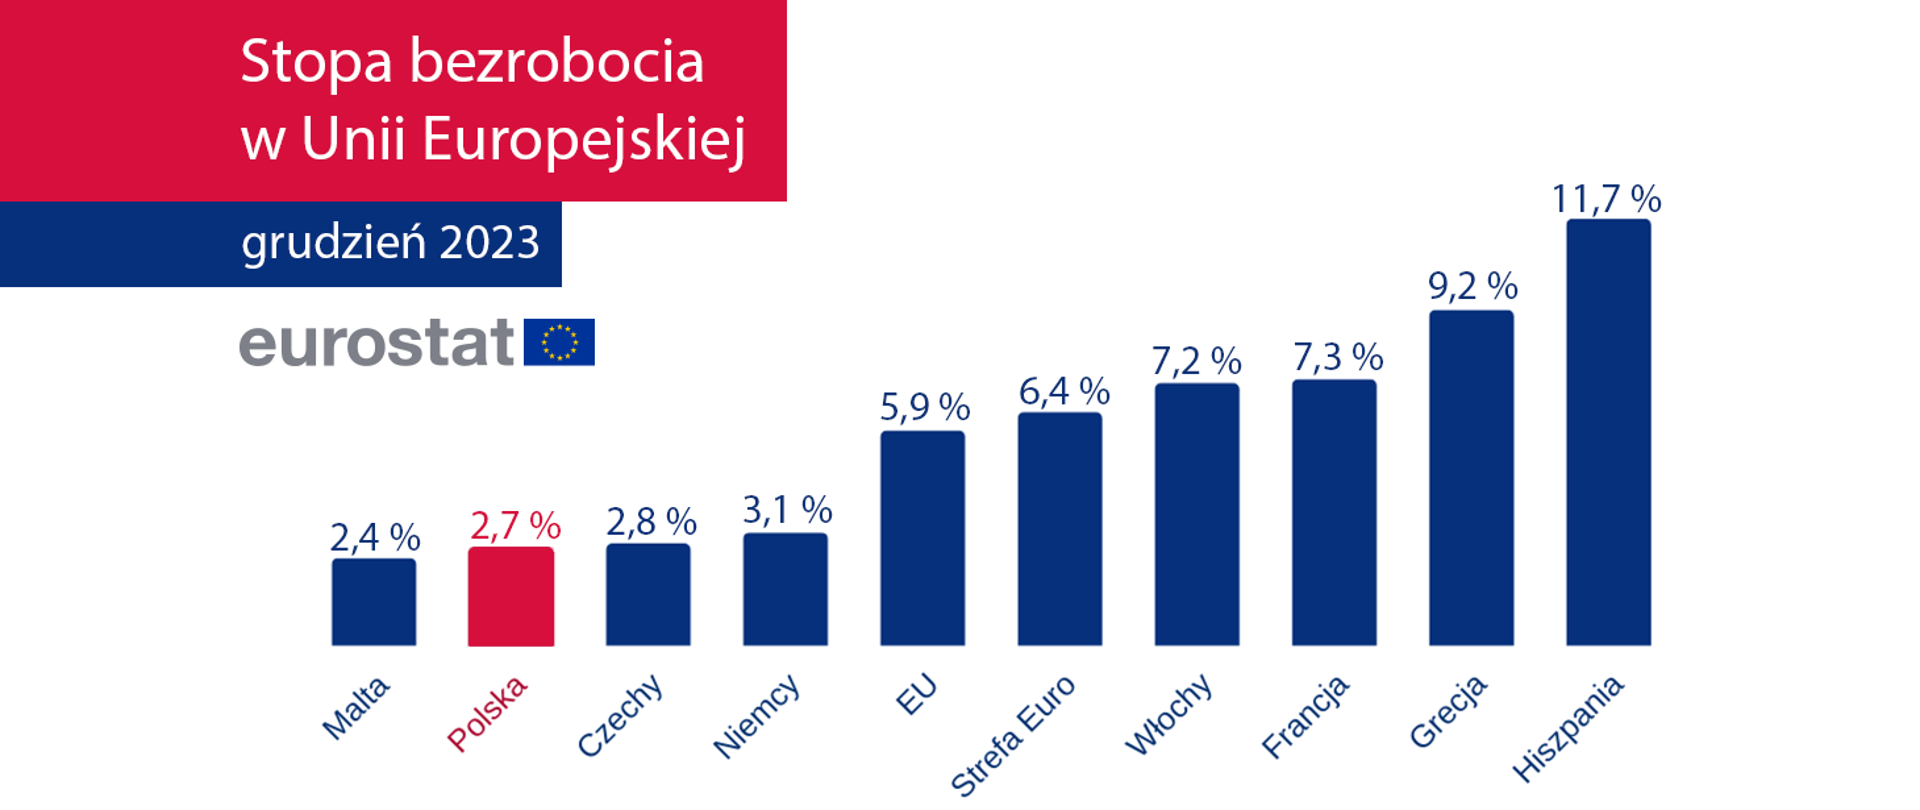 Polska na drugim miejscu z najniższą stopą bezrobocia w UE według Eurostatu